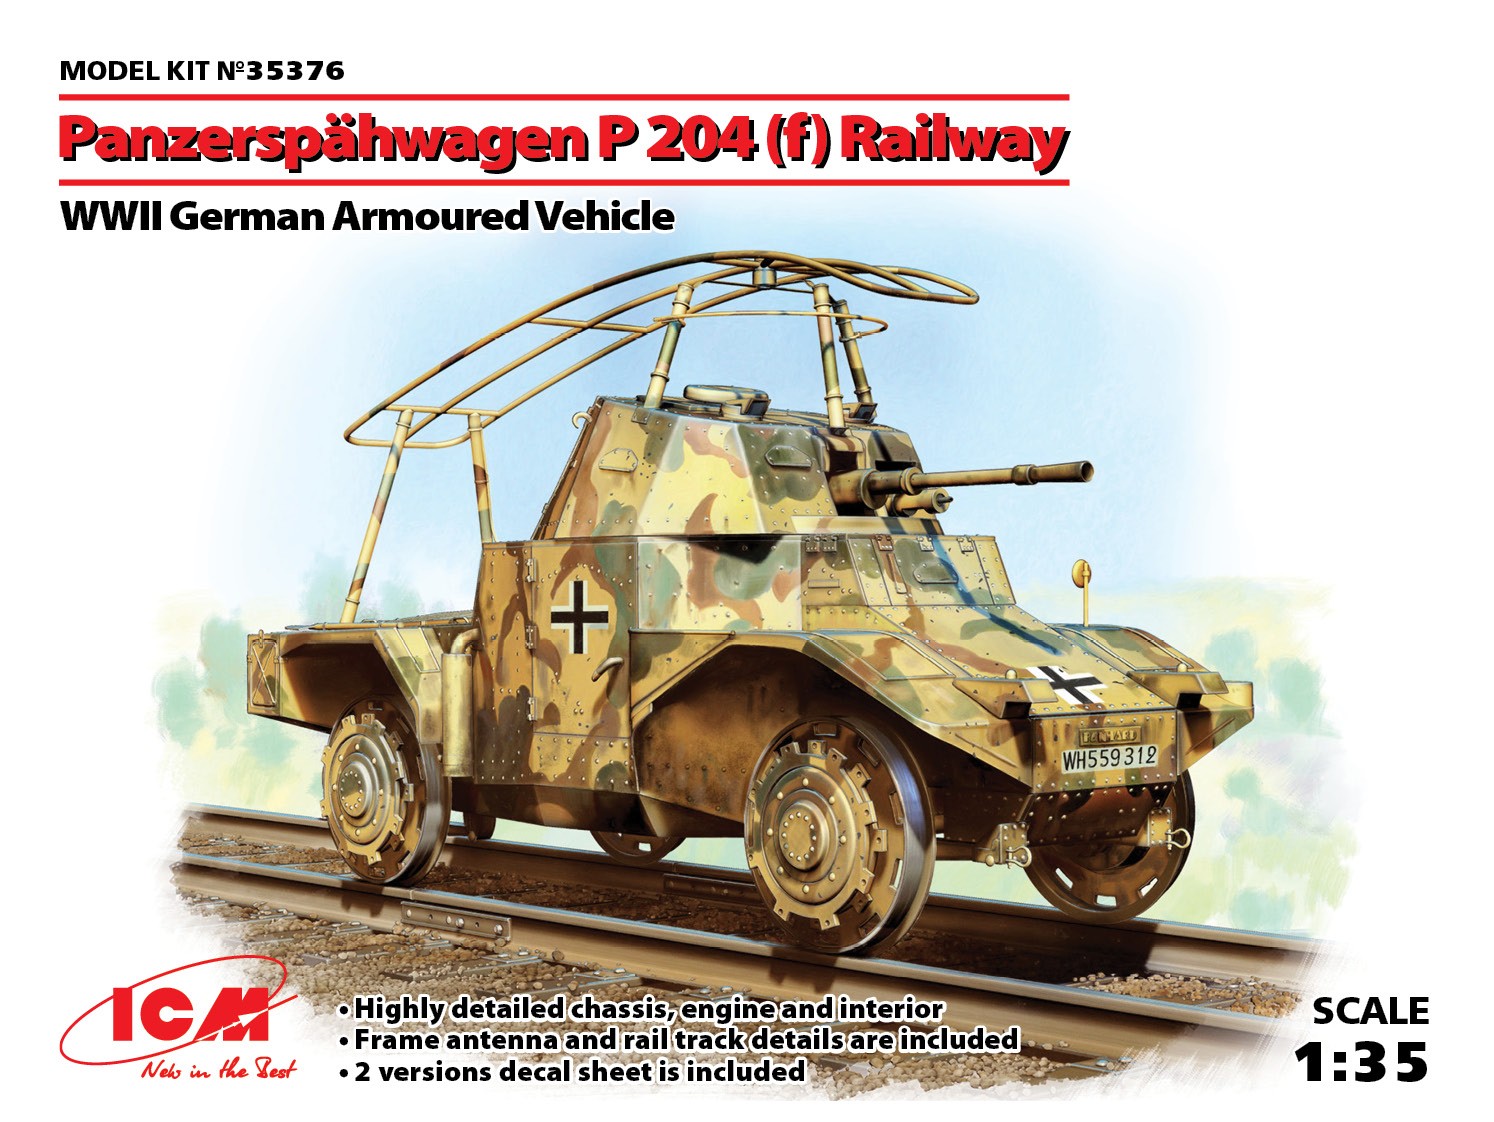 1/35 ドイツ P204(f) 軌道装甲車 [35376] - 5,104円 : Hobby Modelbau Maxim, ホビーショップマキシム